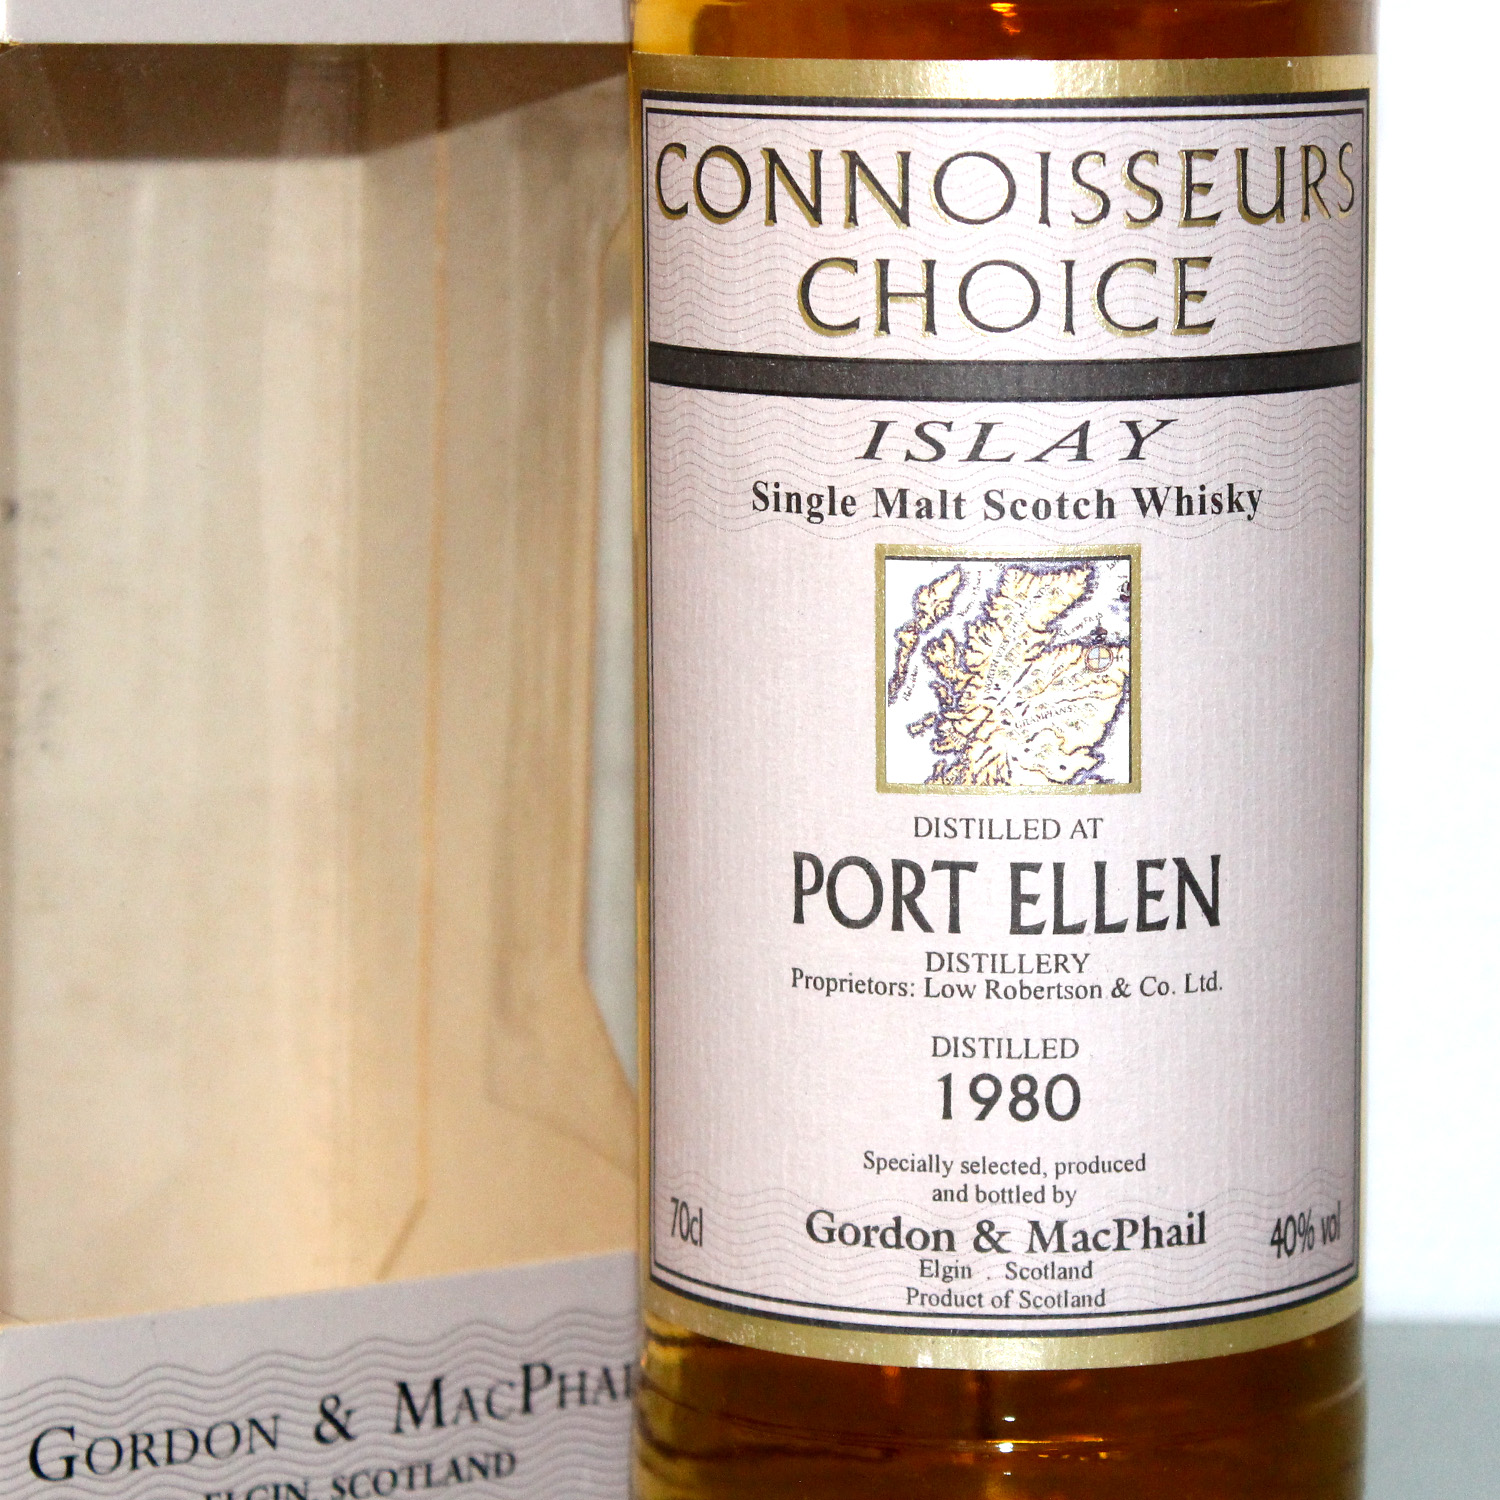 Port Ellen 1980 Connoisseurs Choice Label